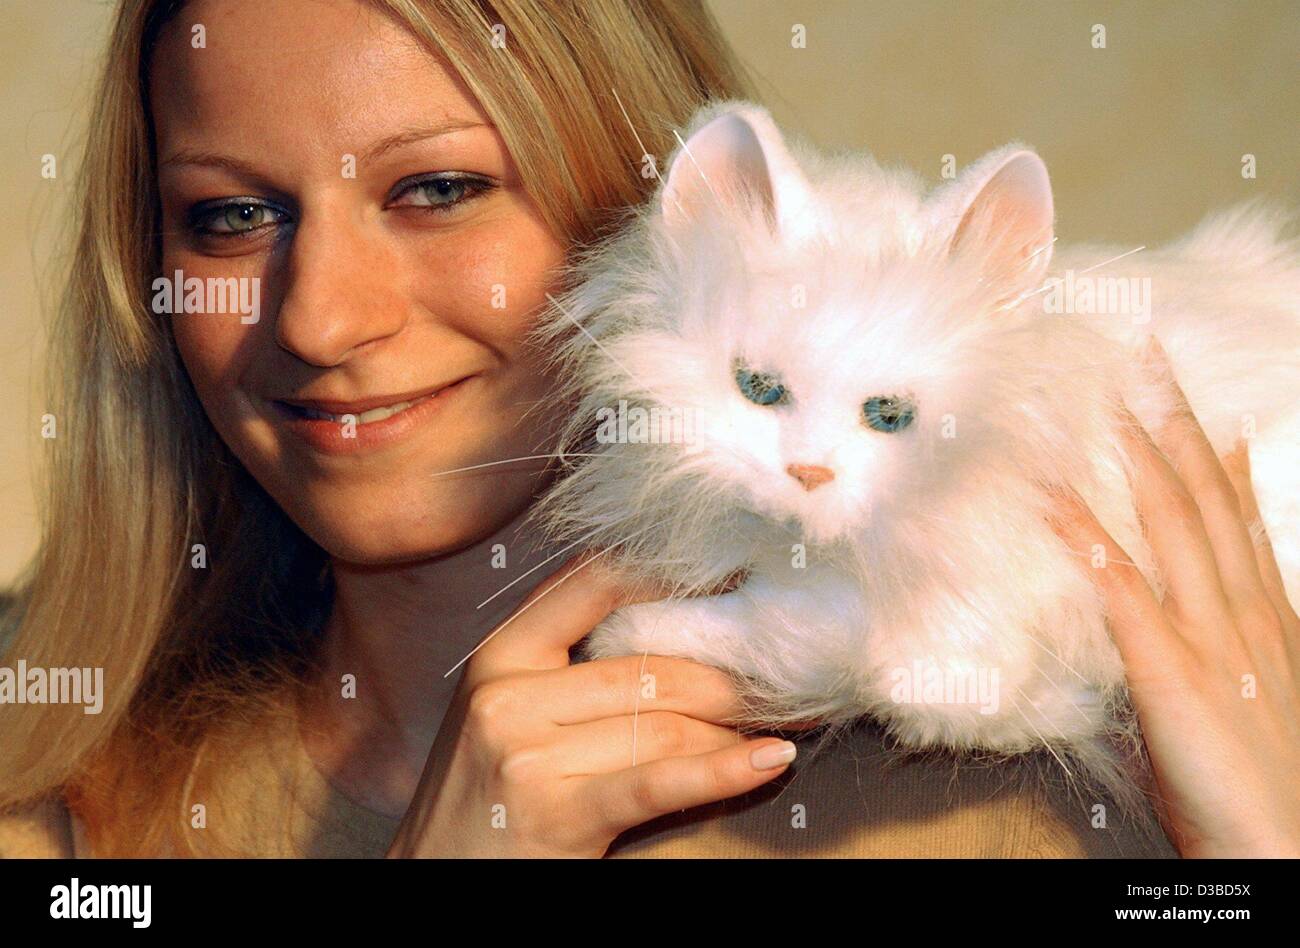 Afp) - Silvia strokes le chat de robot FurReal ami sur l'épaule à la 54e  salon du jouet de Nuremberg à Nuremberg, Allemagne, 29 janvier 2003. Le chat  ronronne quand il est